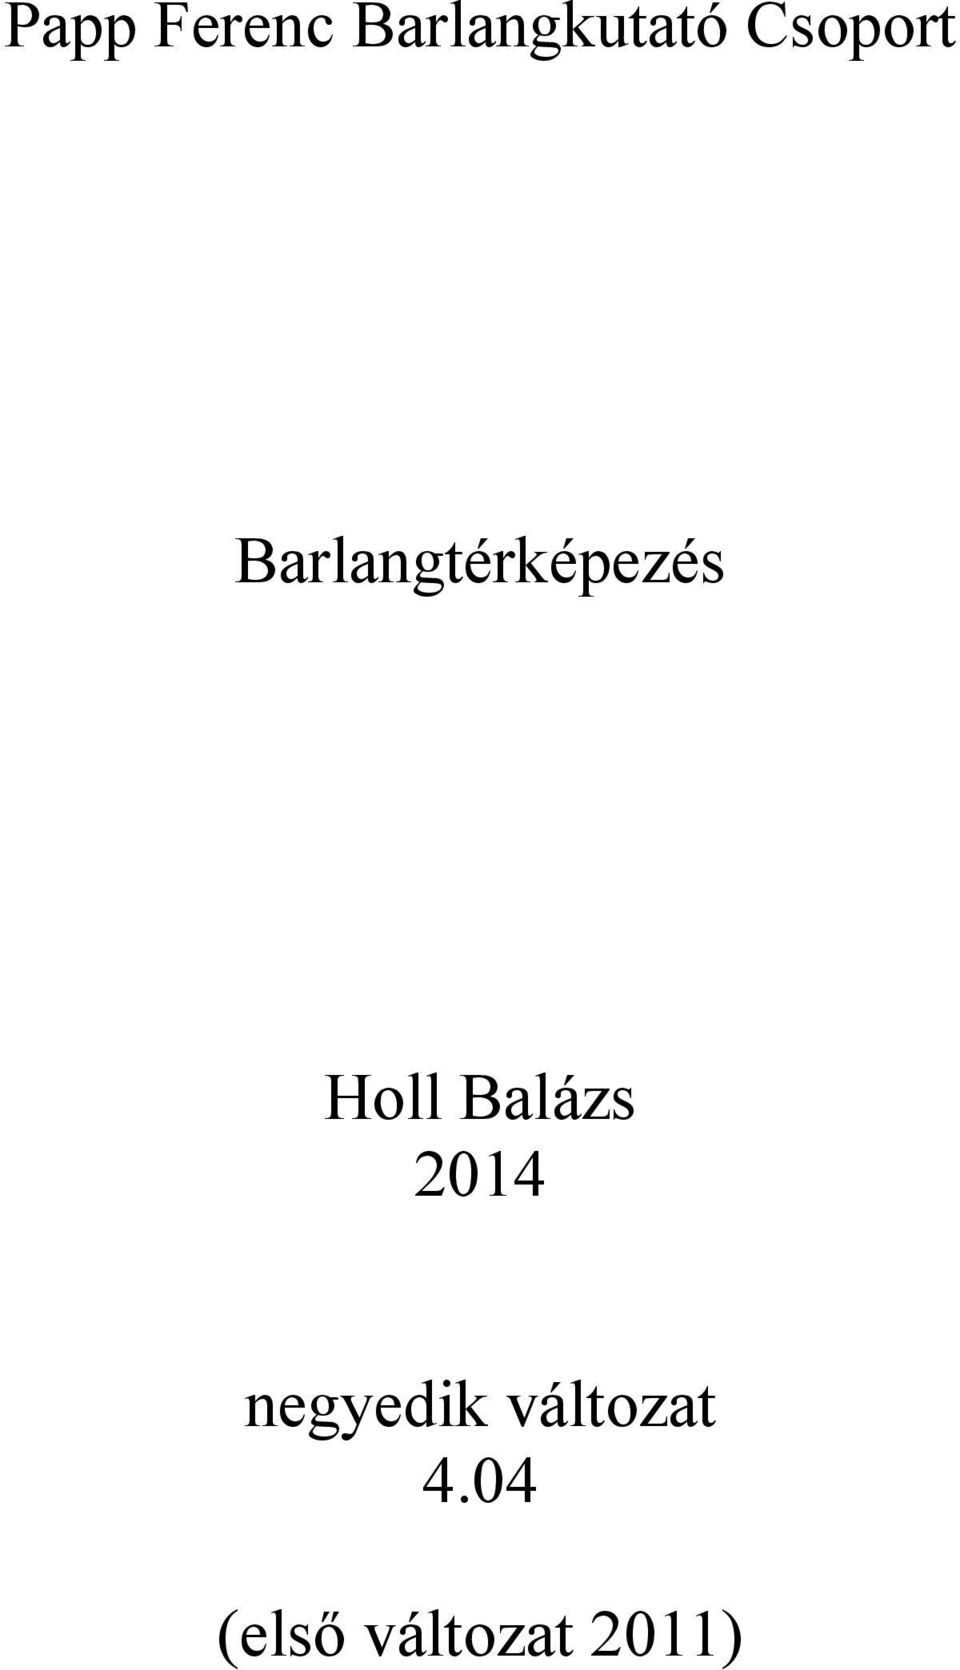 Holl Balázs 2014 negyedik